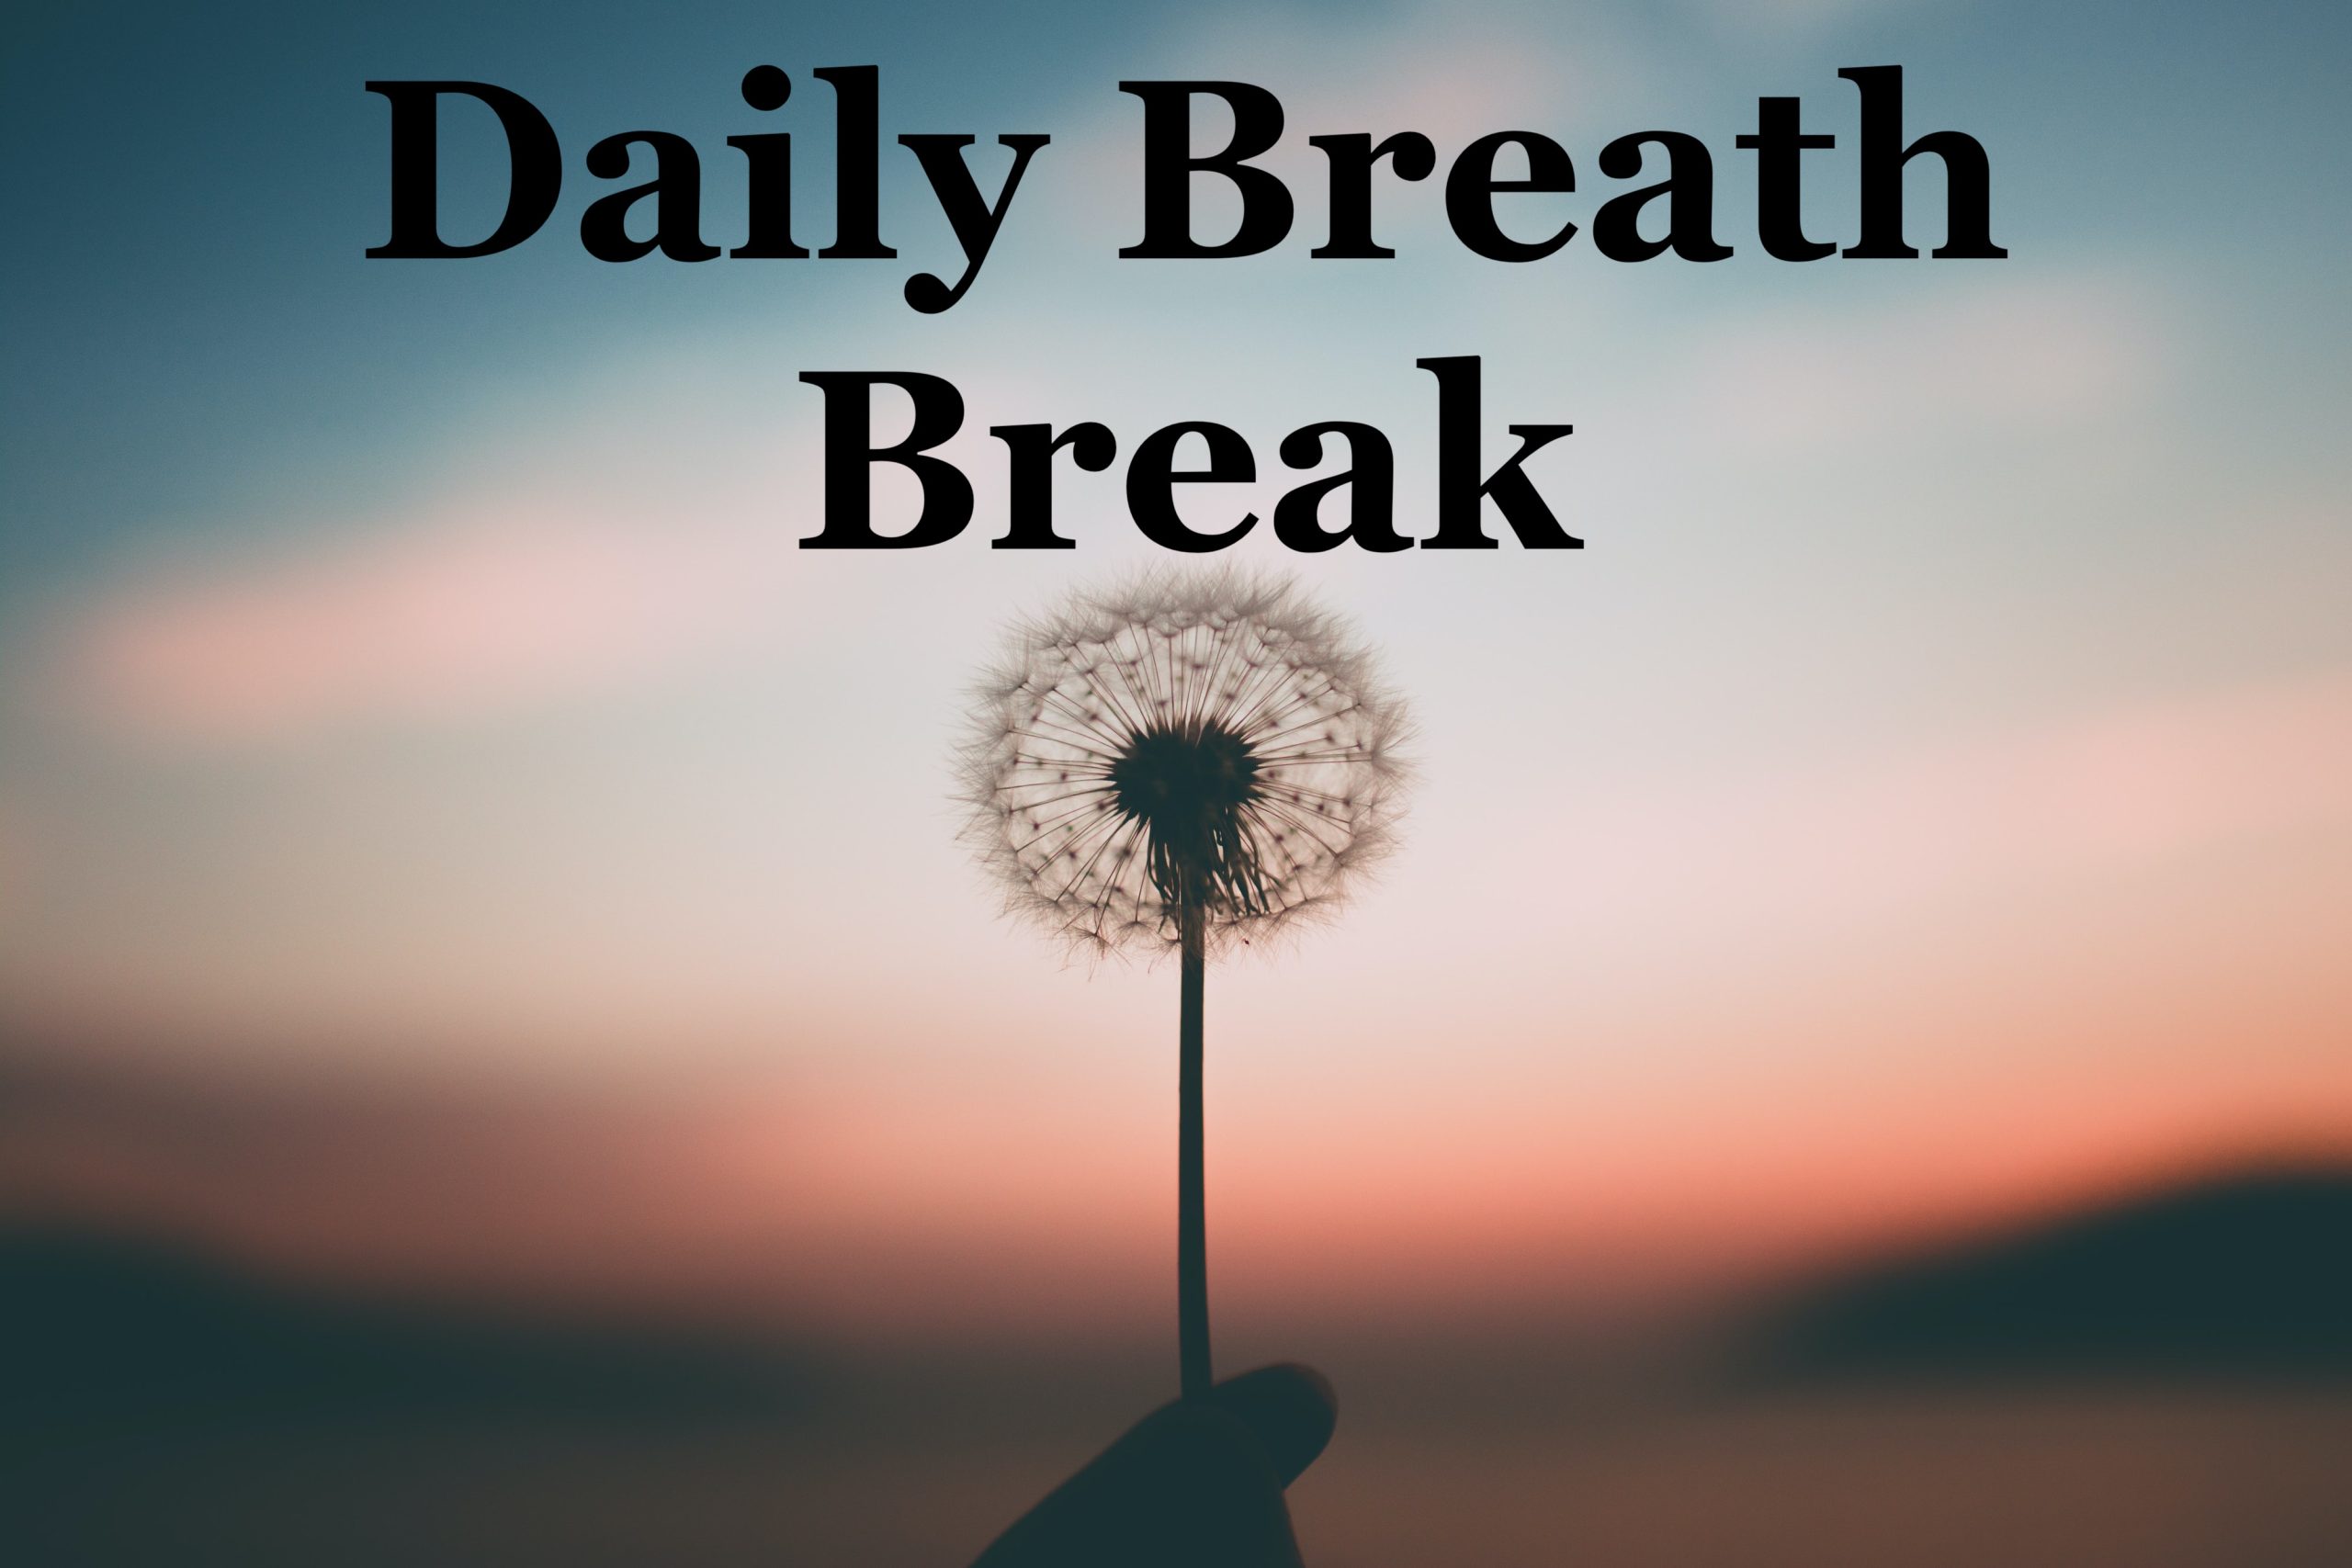 Dandelion - Daily Breath Break